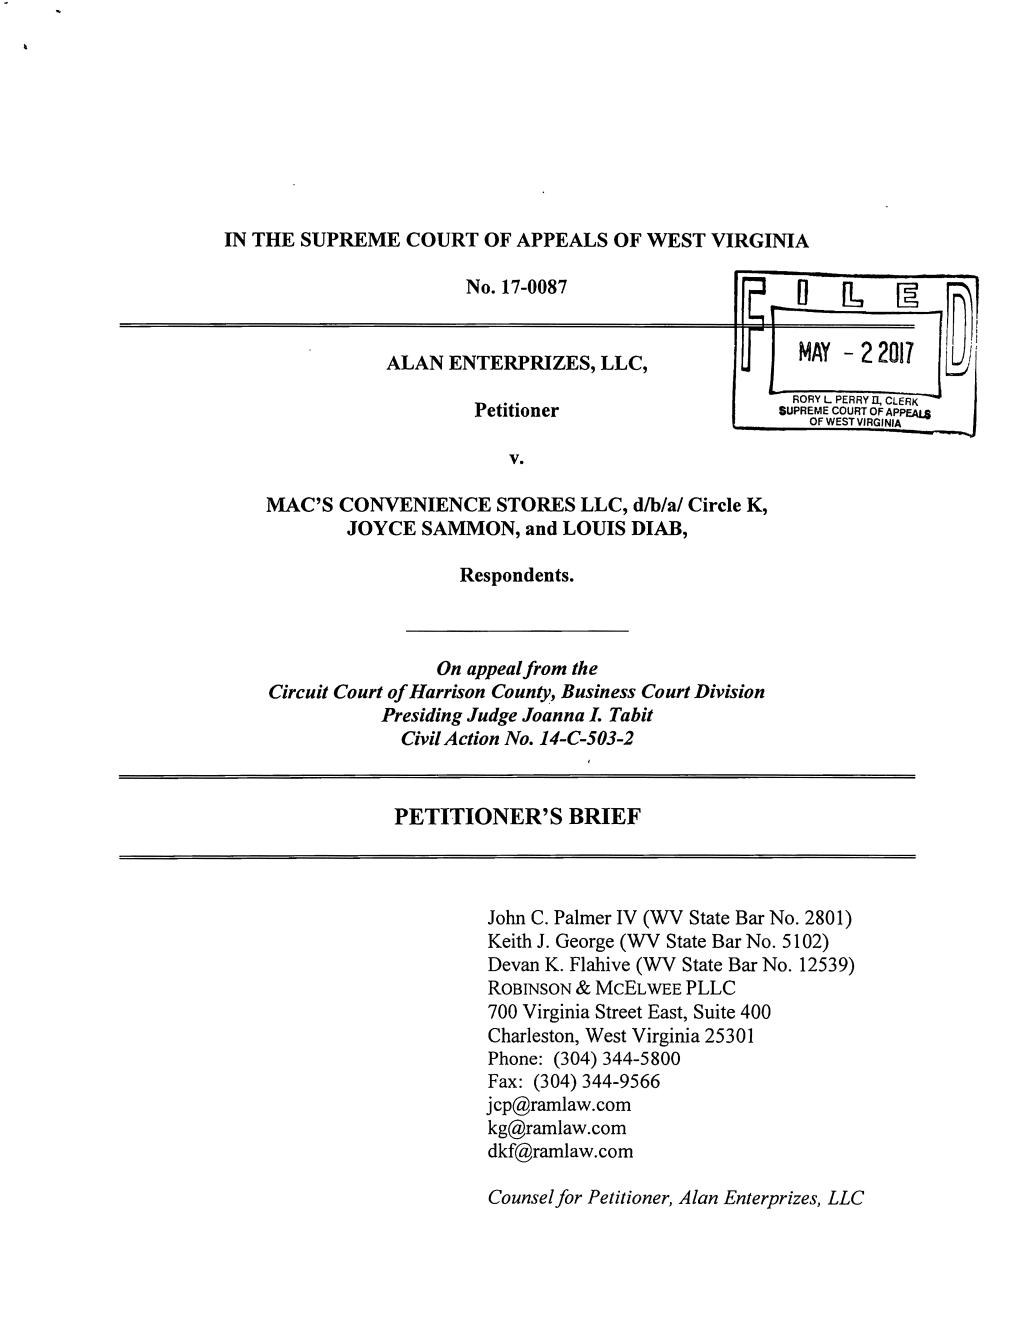 Petitioner's Brief, Alan Enterprises, LLC V. Mac's Convenience Stores